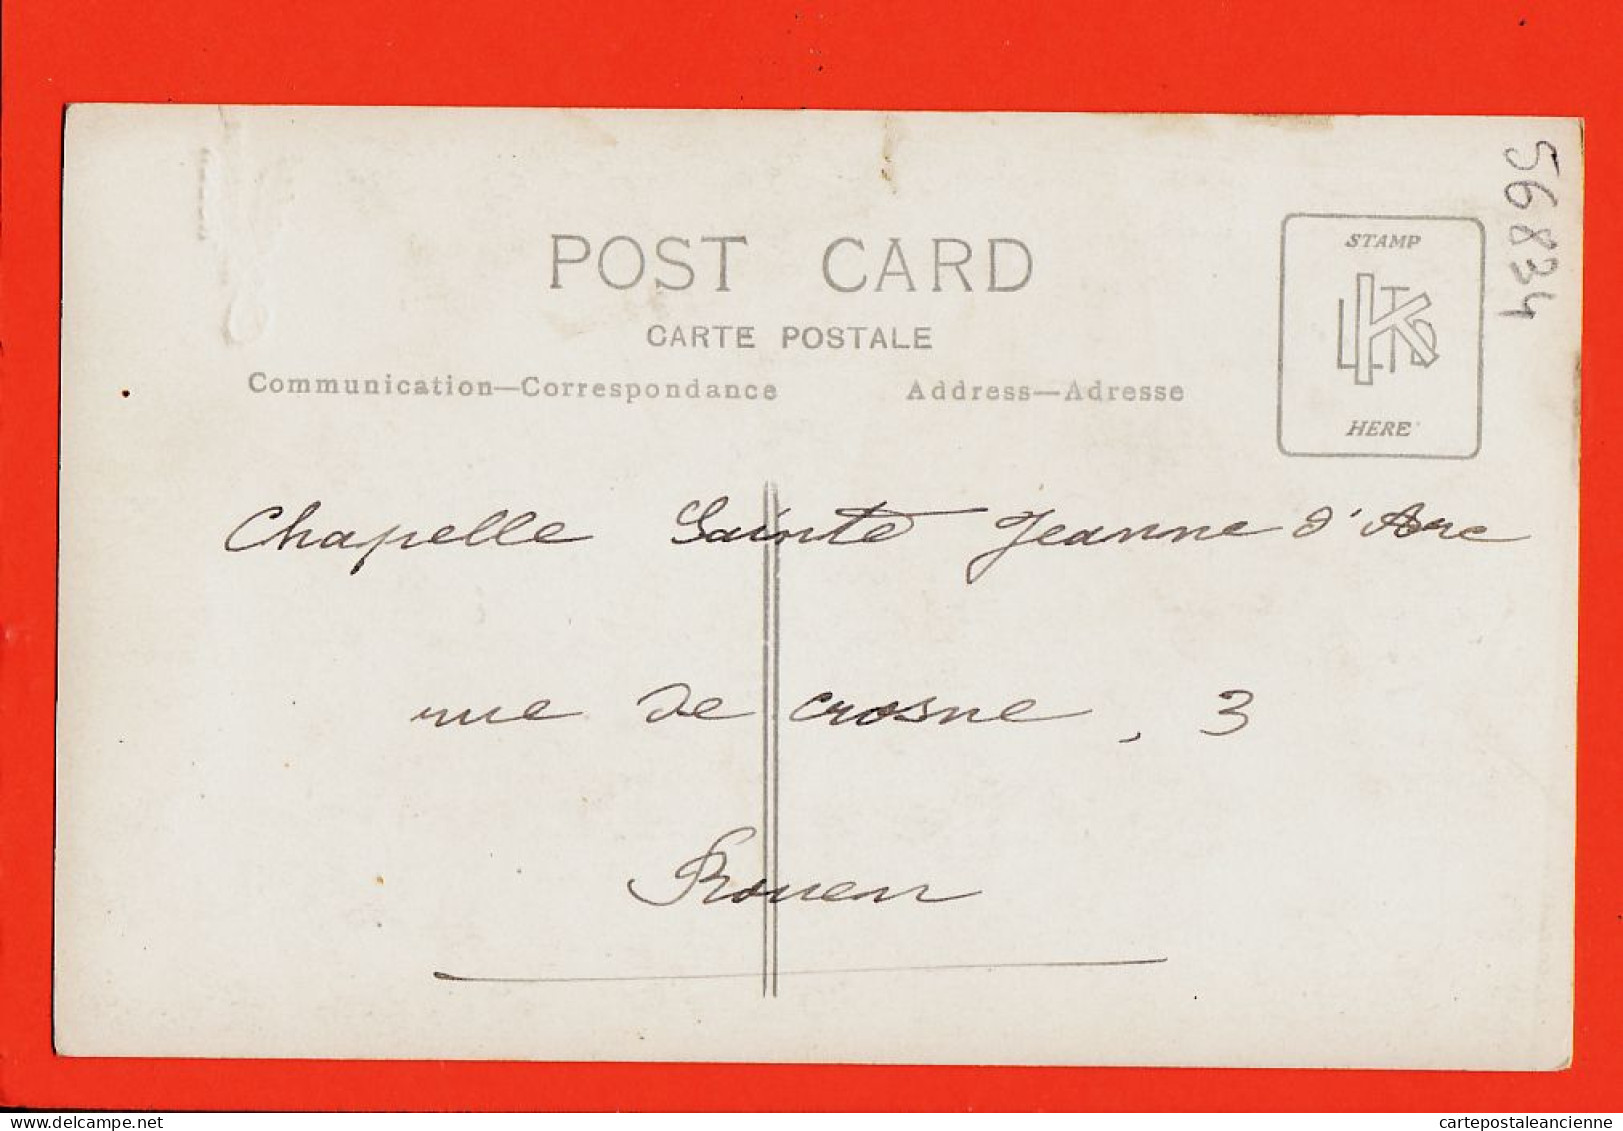 35650 / Carte-Photo ROUEN (76) Chapelle SAINTE JEANNE D'ARC 3 Rue De CROSNE Ste 1910s Photographe CHARLES - Rouen